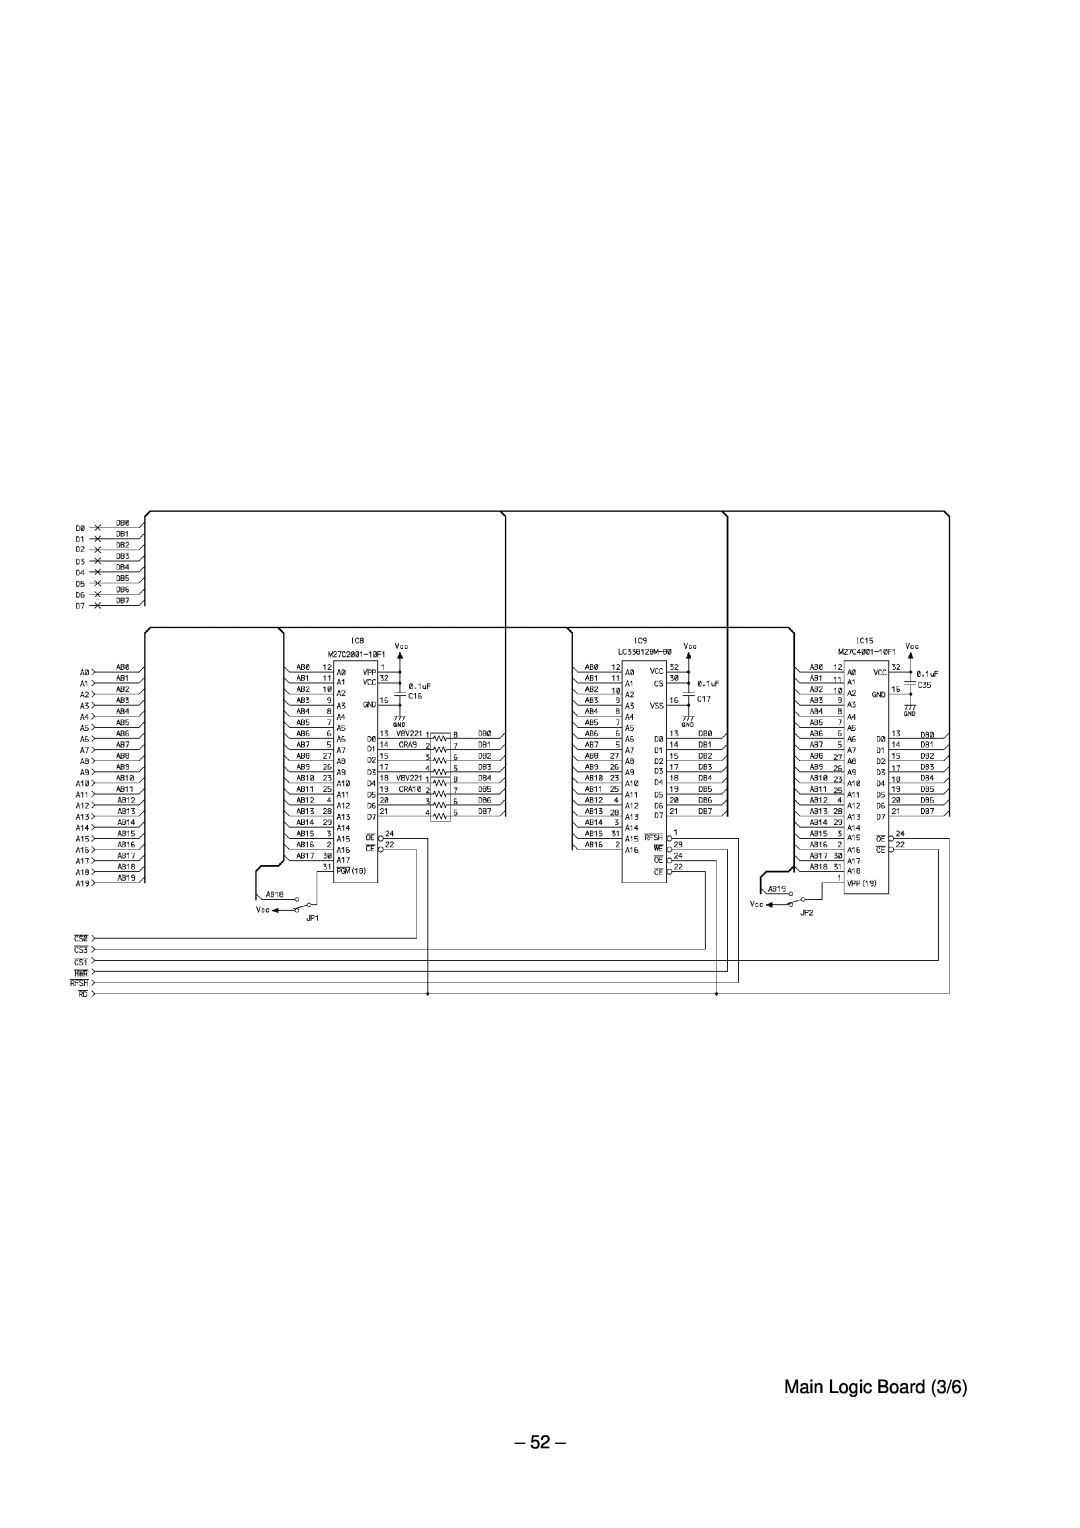 Star Micronics TSP200 technical manual Main Logic Board 3/6 